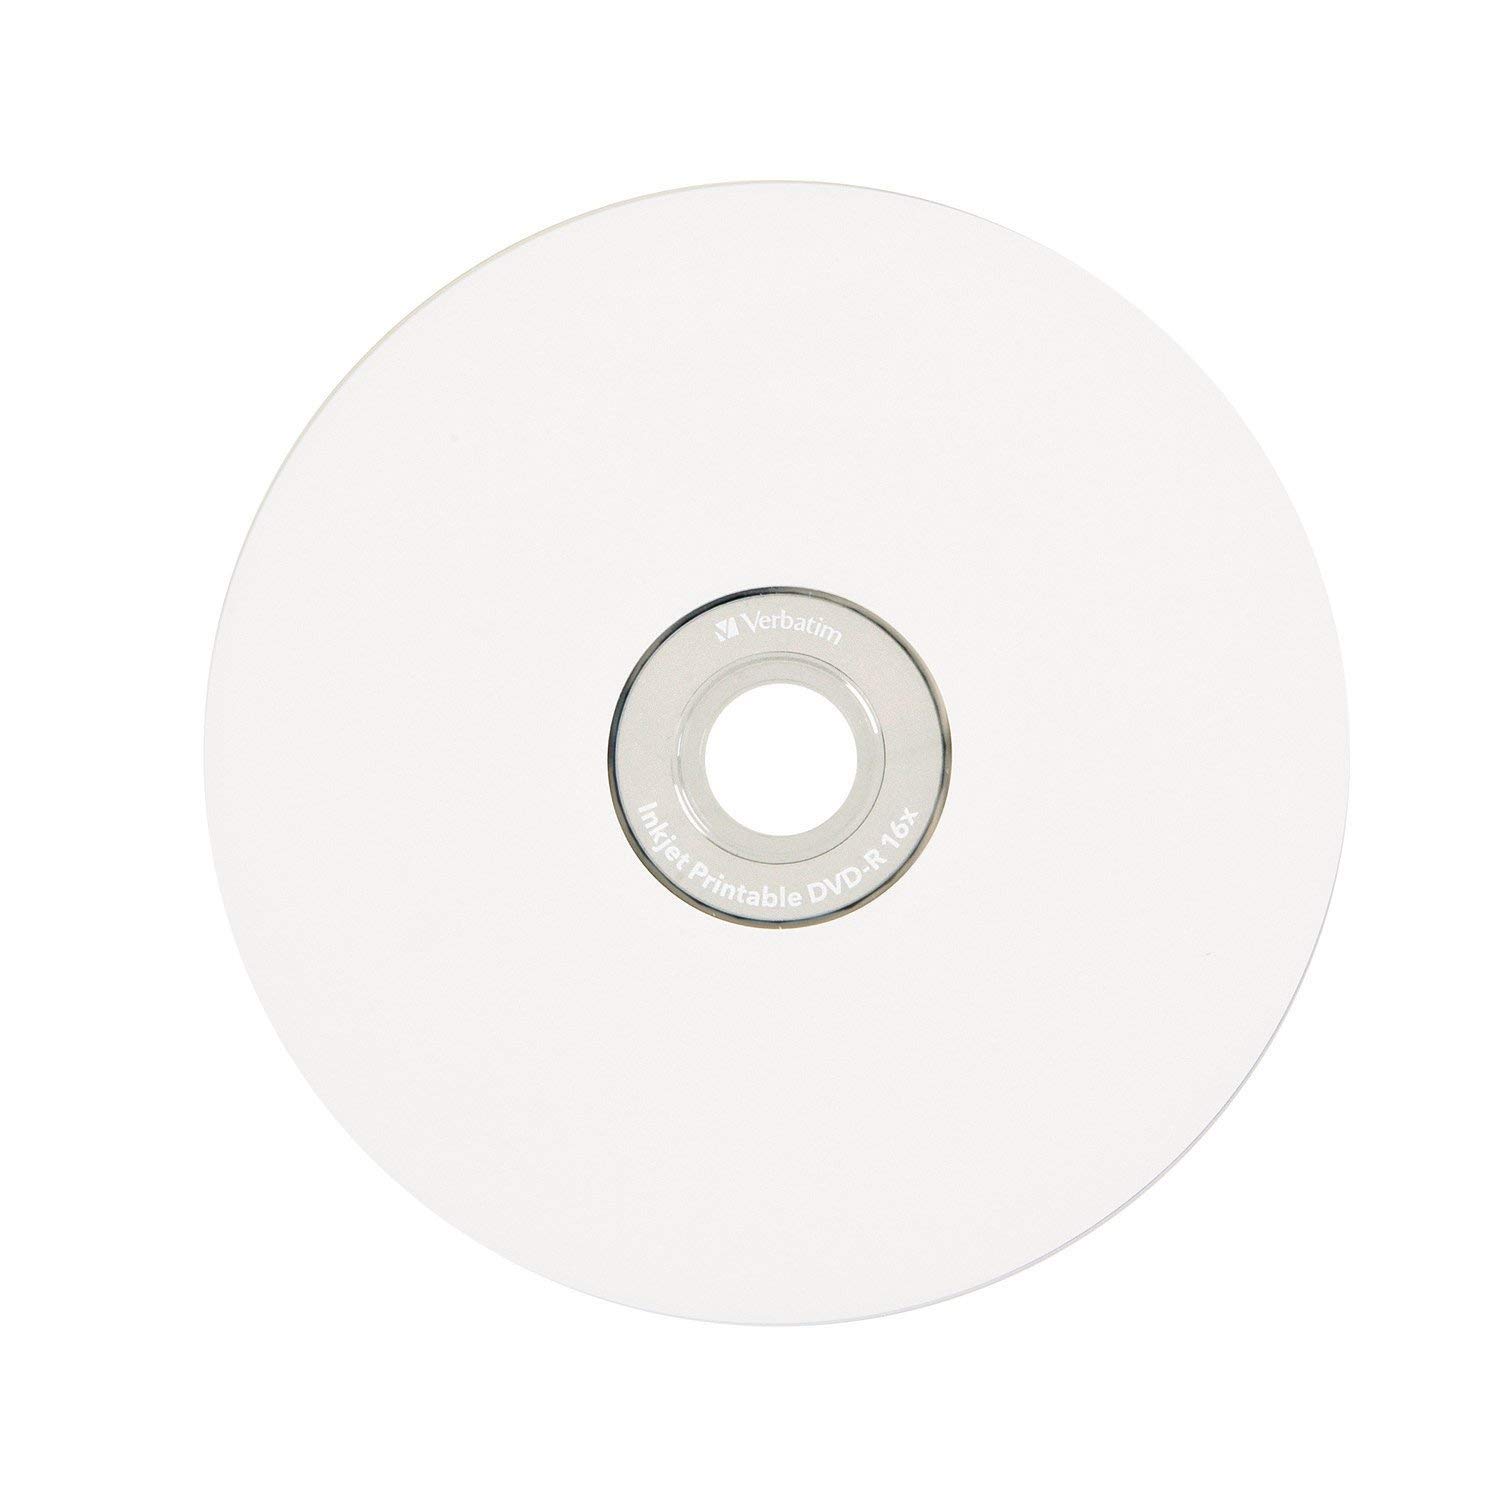 Verbatim DVD-R 4.7GB 16X White Inkjet Printable with Branded Hub, 100-Disc